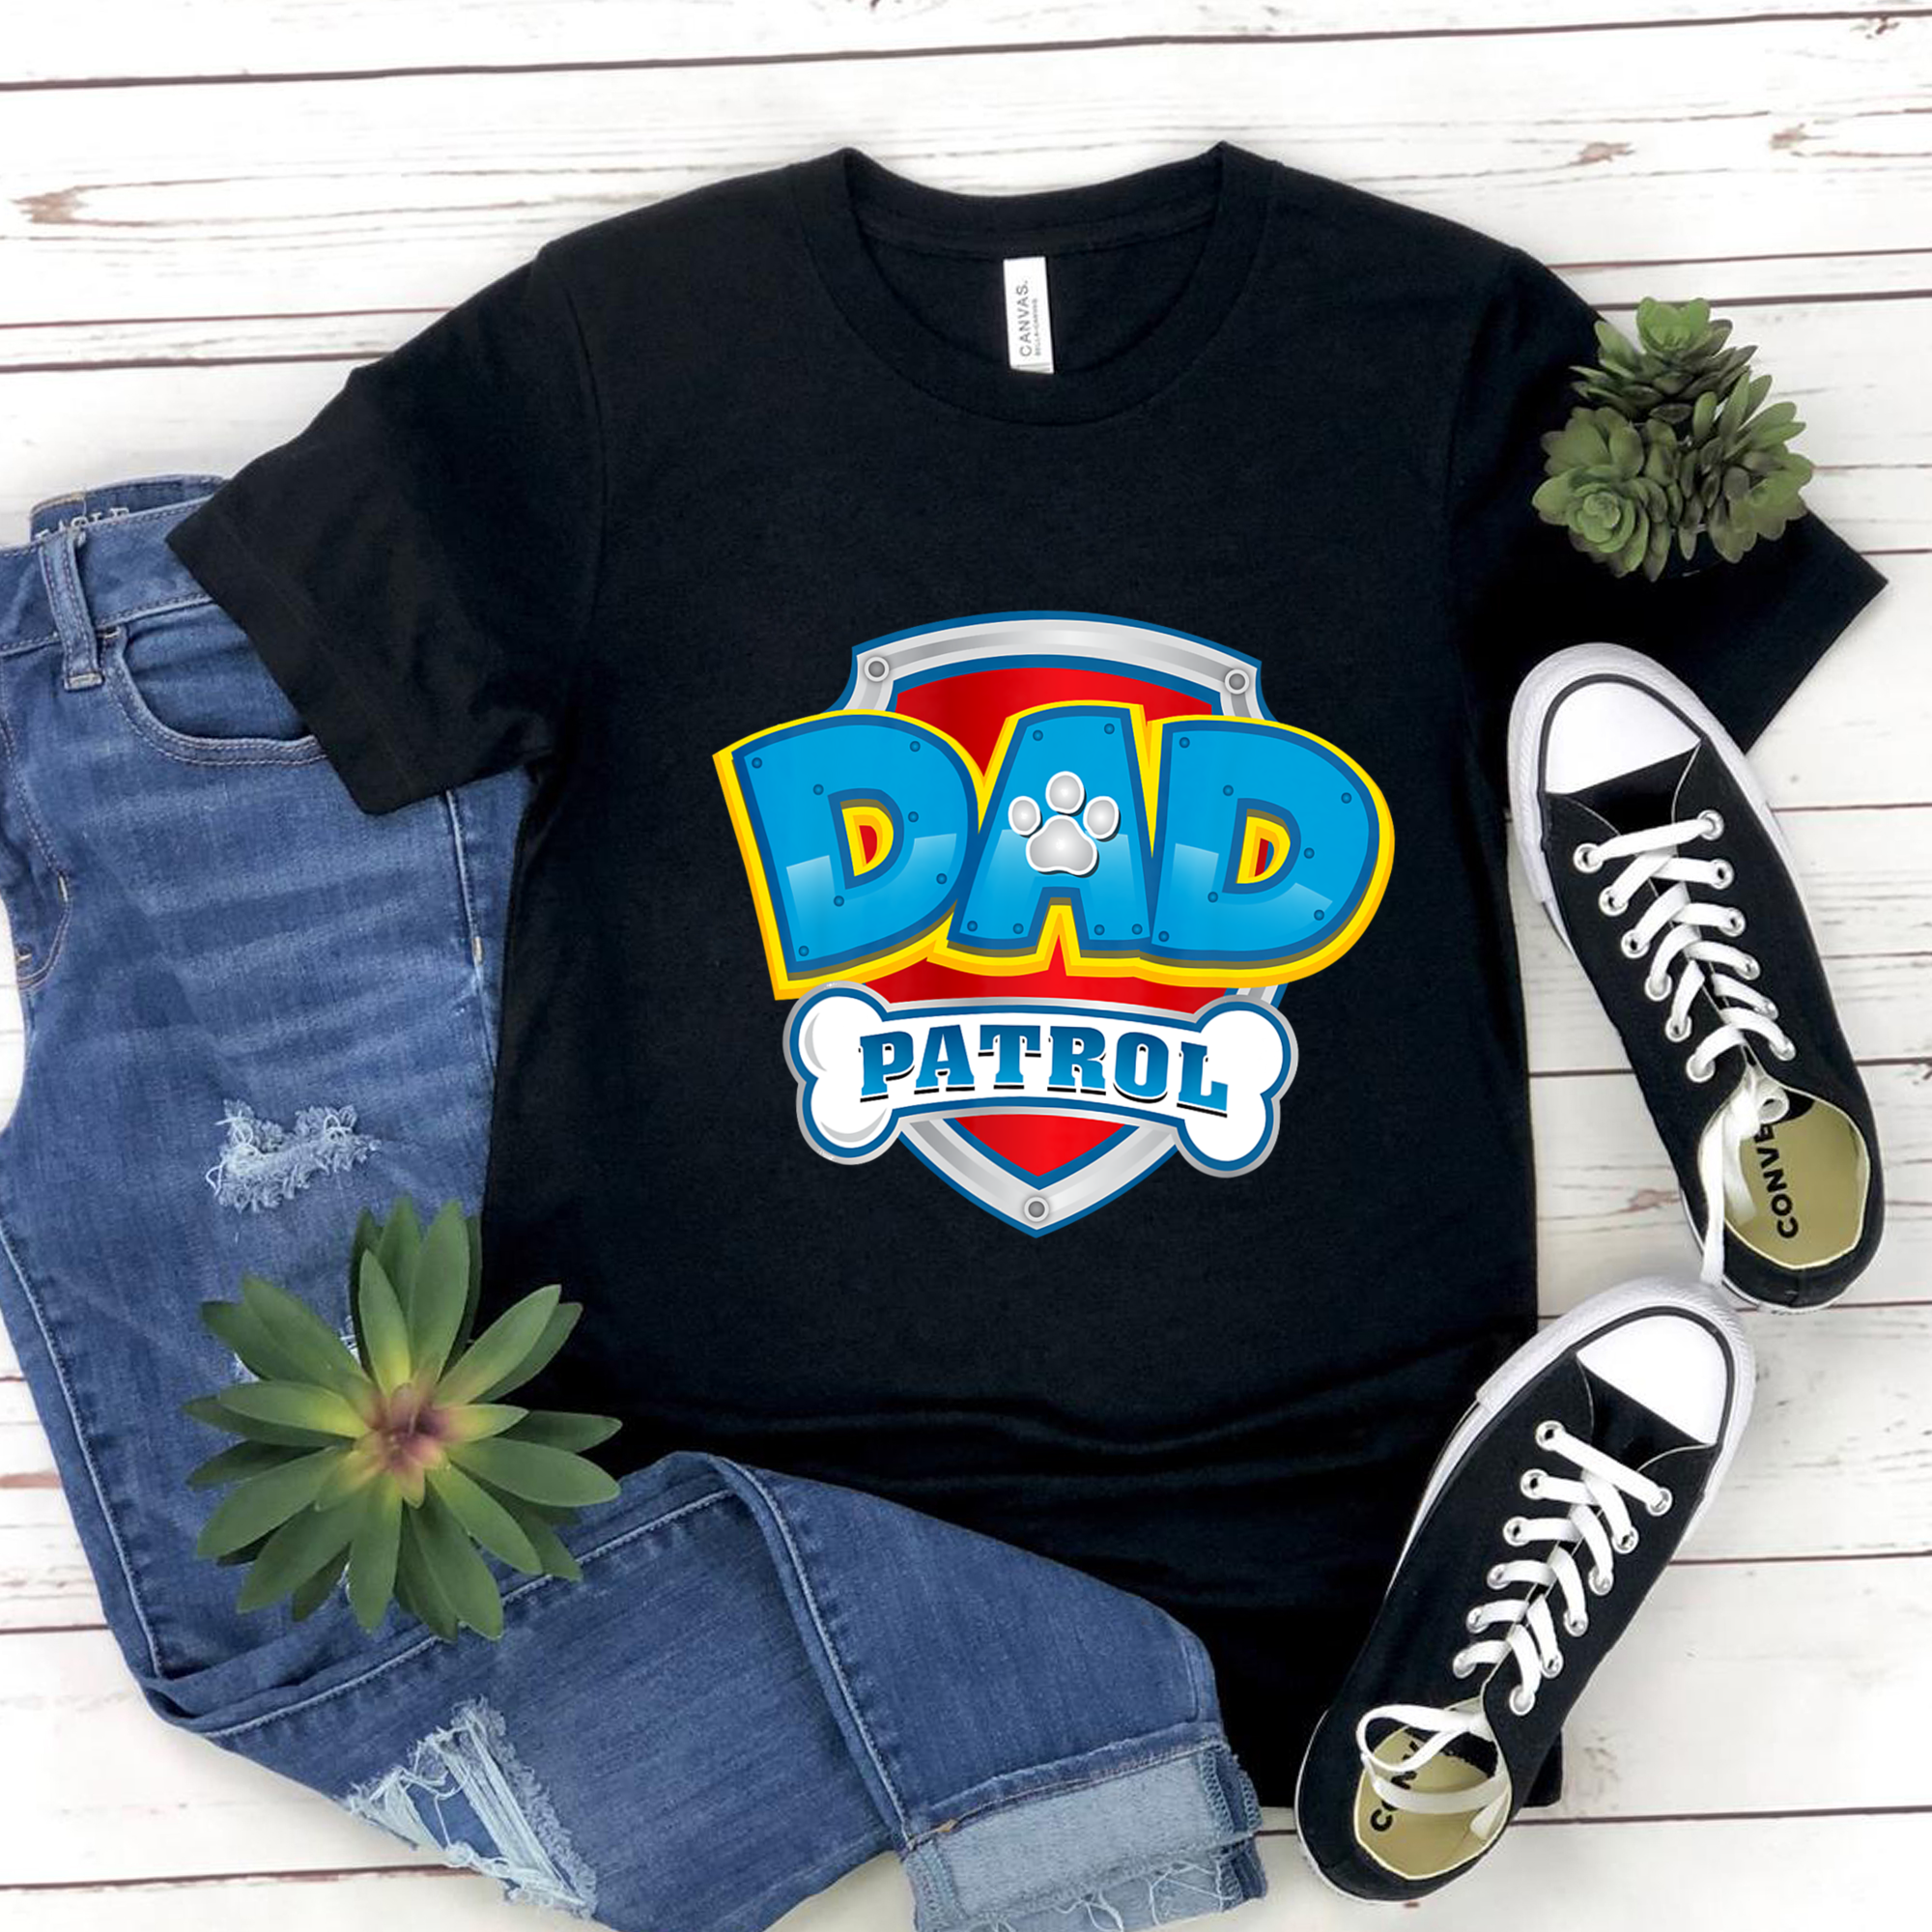 Dad Patrol Shirt, Dad Patrol Gift, Fathers Day Ideas Shirt, Fathers Day Ideas Gift,